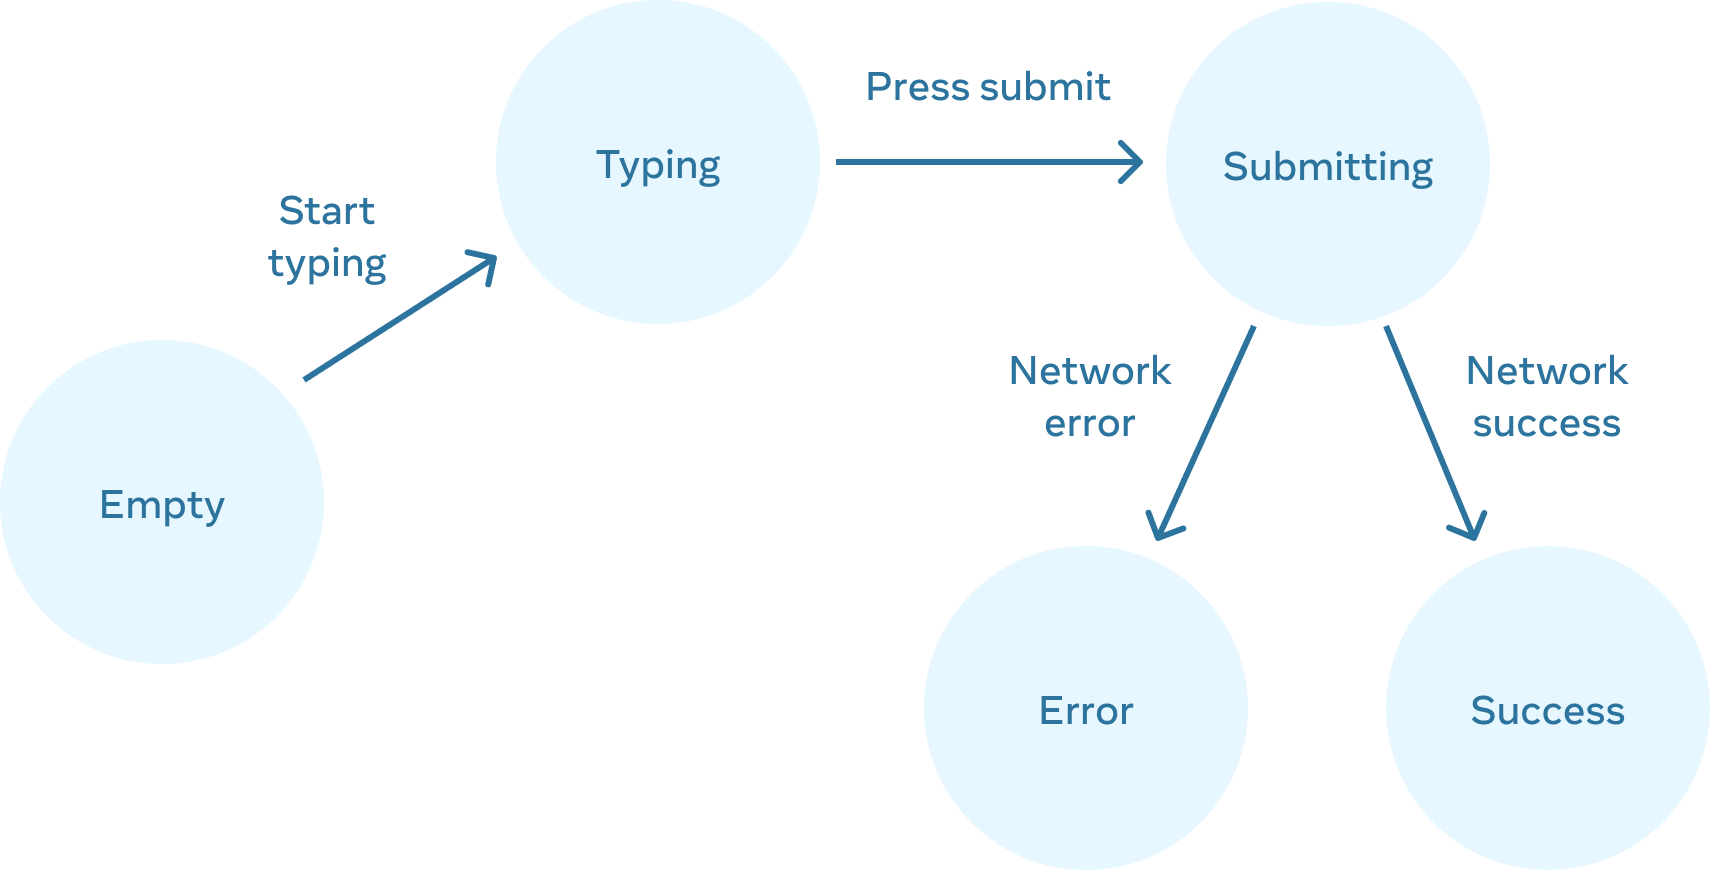 Soldan sağa doğru 5 düğümle ilerleyen akış şeması. 'empty' olarak etiketlenen ilk düğümün 'start typing' olarak etiketlenen ve 'typing' olarak etiketlenen bir düğüme bağlı bir kenarı vardır. Bu düğümün iki kenarı olan 'submitting' etiketli bir düğüme bağlı 'press submit' etiketli bir kenarı vardır. Sol kenar 'error' etiketli bir düğüme bağlanan 'network error' olarak etiketlenmiştir. Sağ kenar ise 'success' etiketli bir düğüme bağlanan 'network success' olarak etiketlenmiştir.